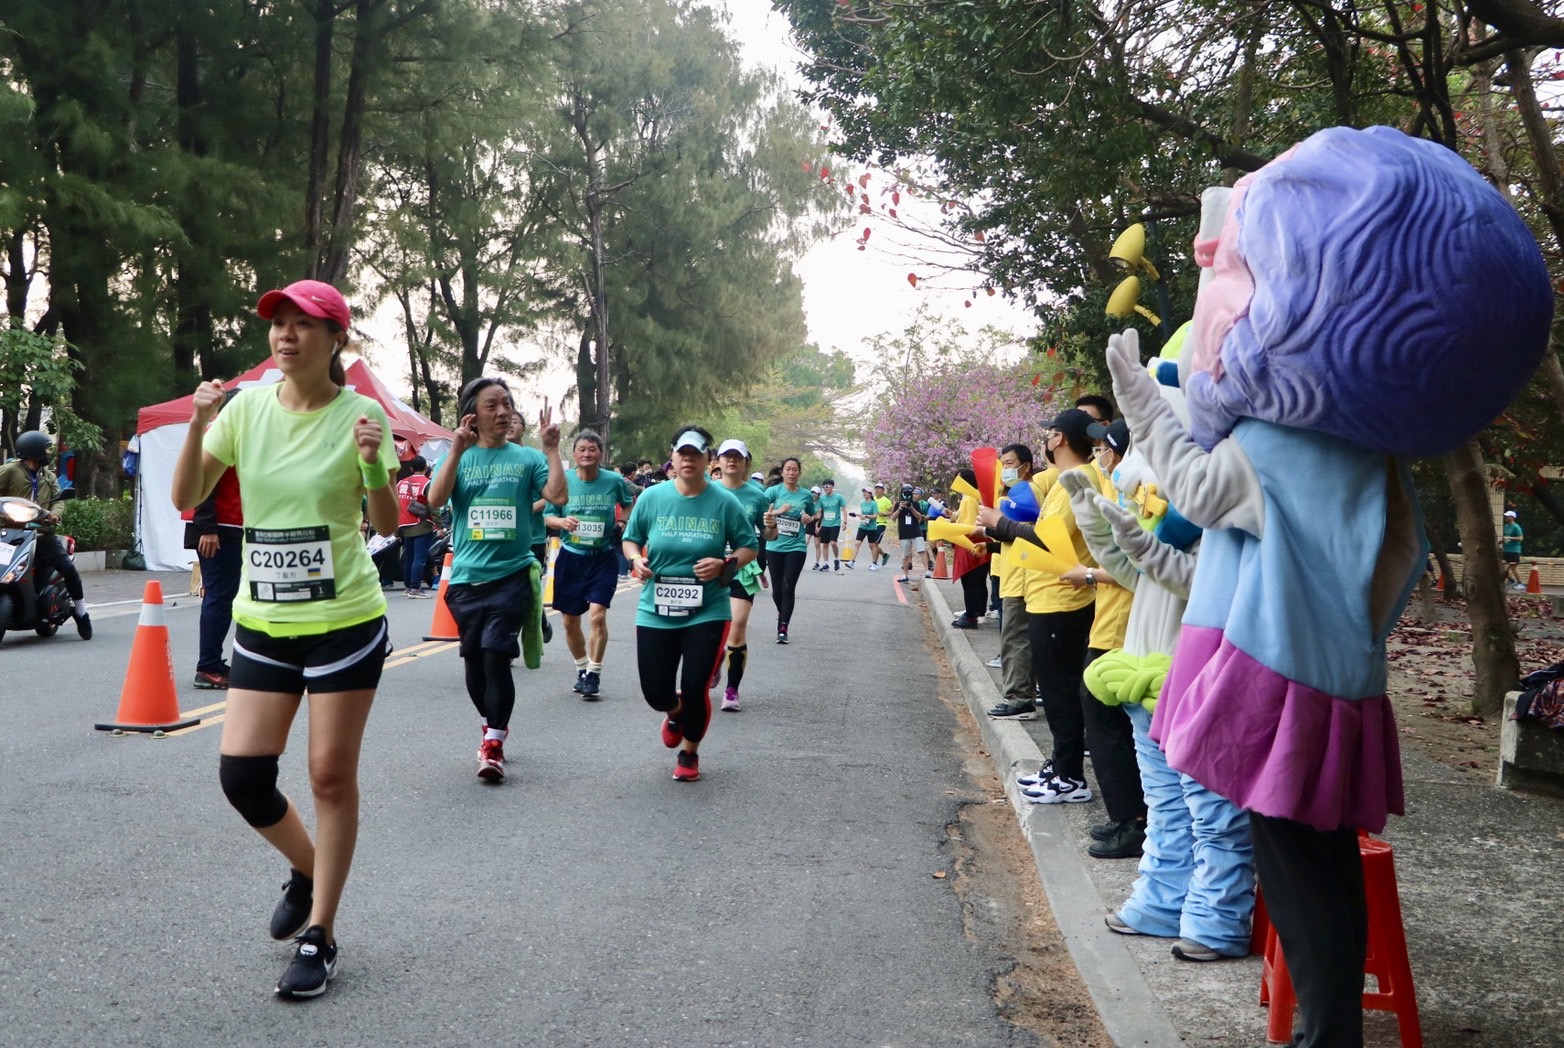 2023臺南古都馬拉松開跑  安平區加油團由安平劍獅人偶帶隊熱情為選手加油!